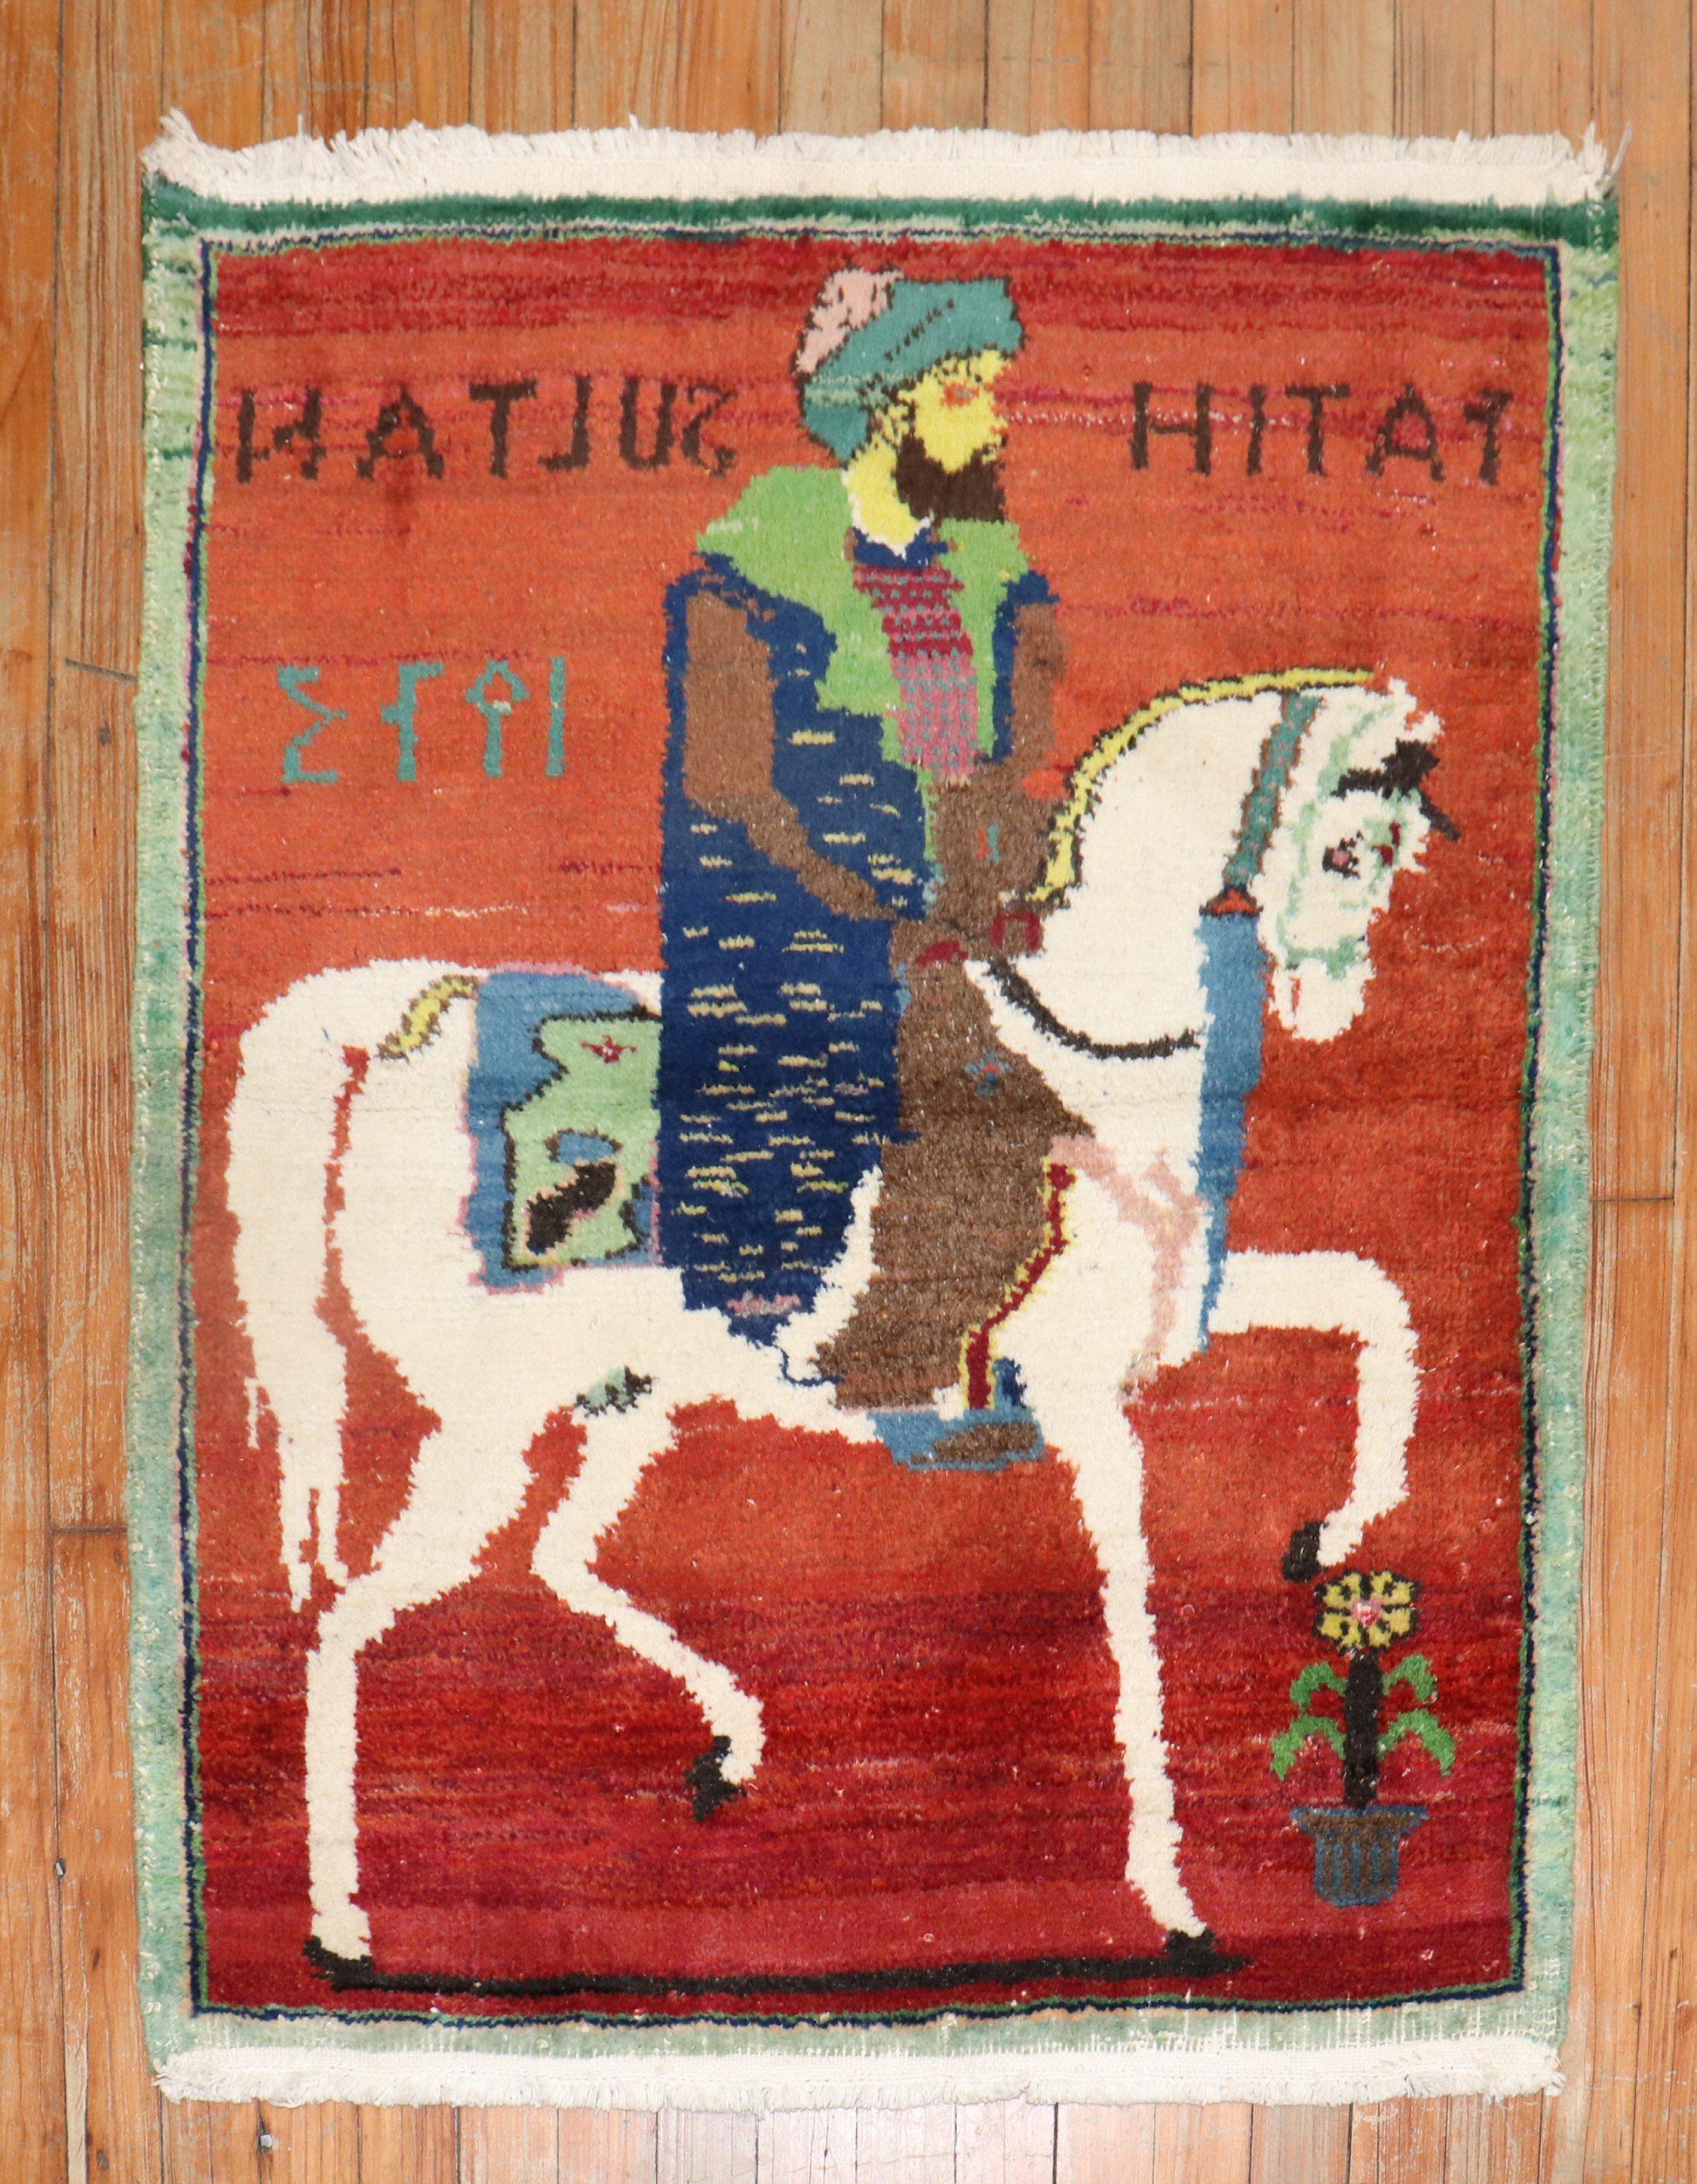 Türkischer Bildteppich im Vintage-Stil, der einen bärtigen Herrn auf seinem Pferd auf rotem Grund zeigt. Datiert 1973, die eingewebten türkischen Namen scheinen ihn zu einem Mitgiftgeschenk zu machen

Maße: 2'8'' x 3'2''.